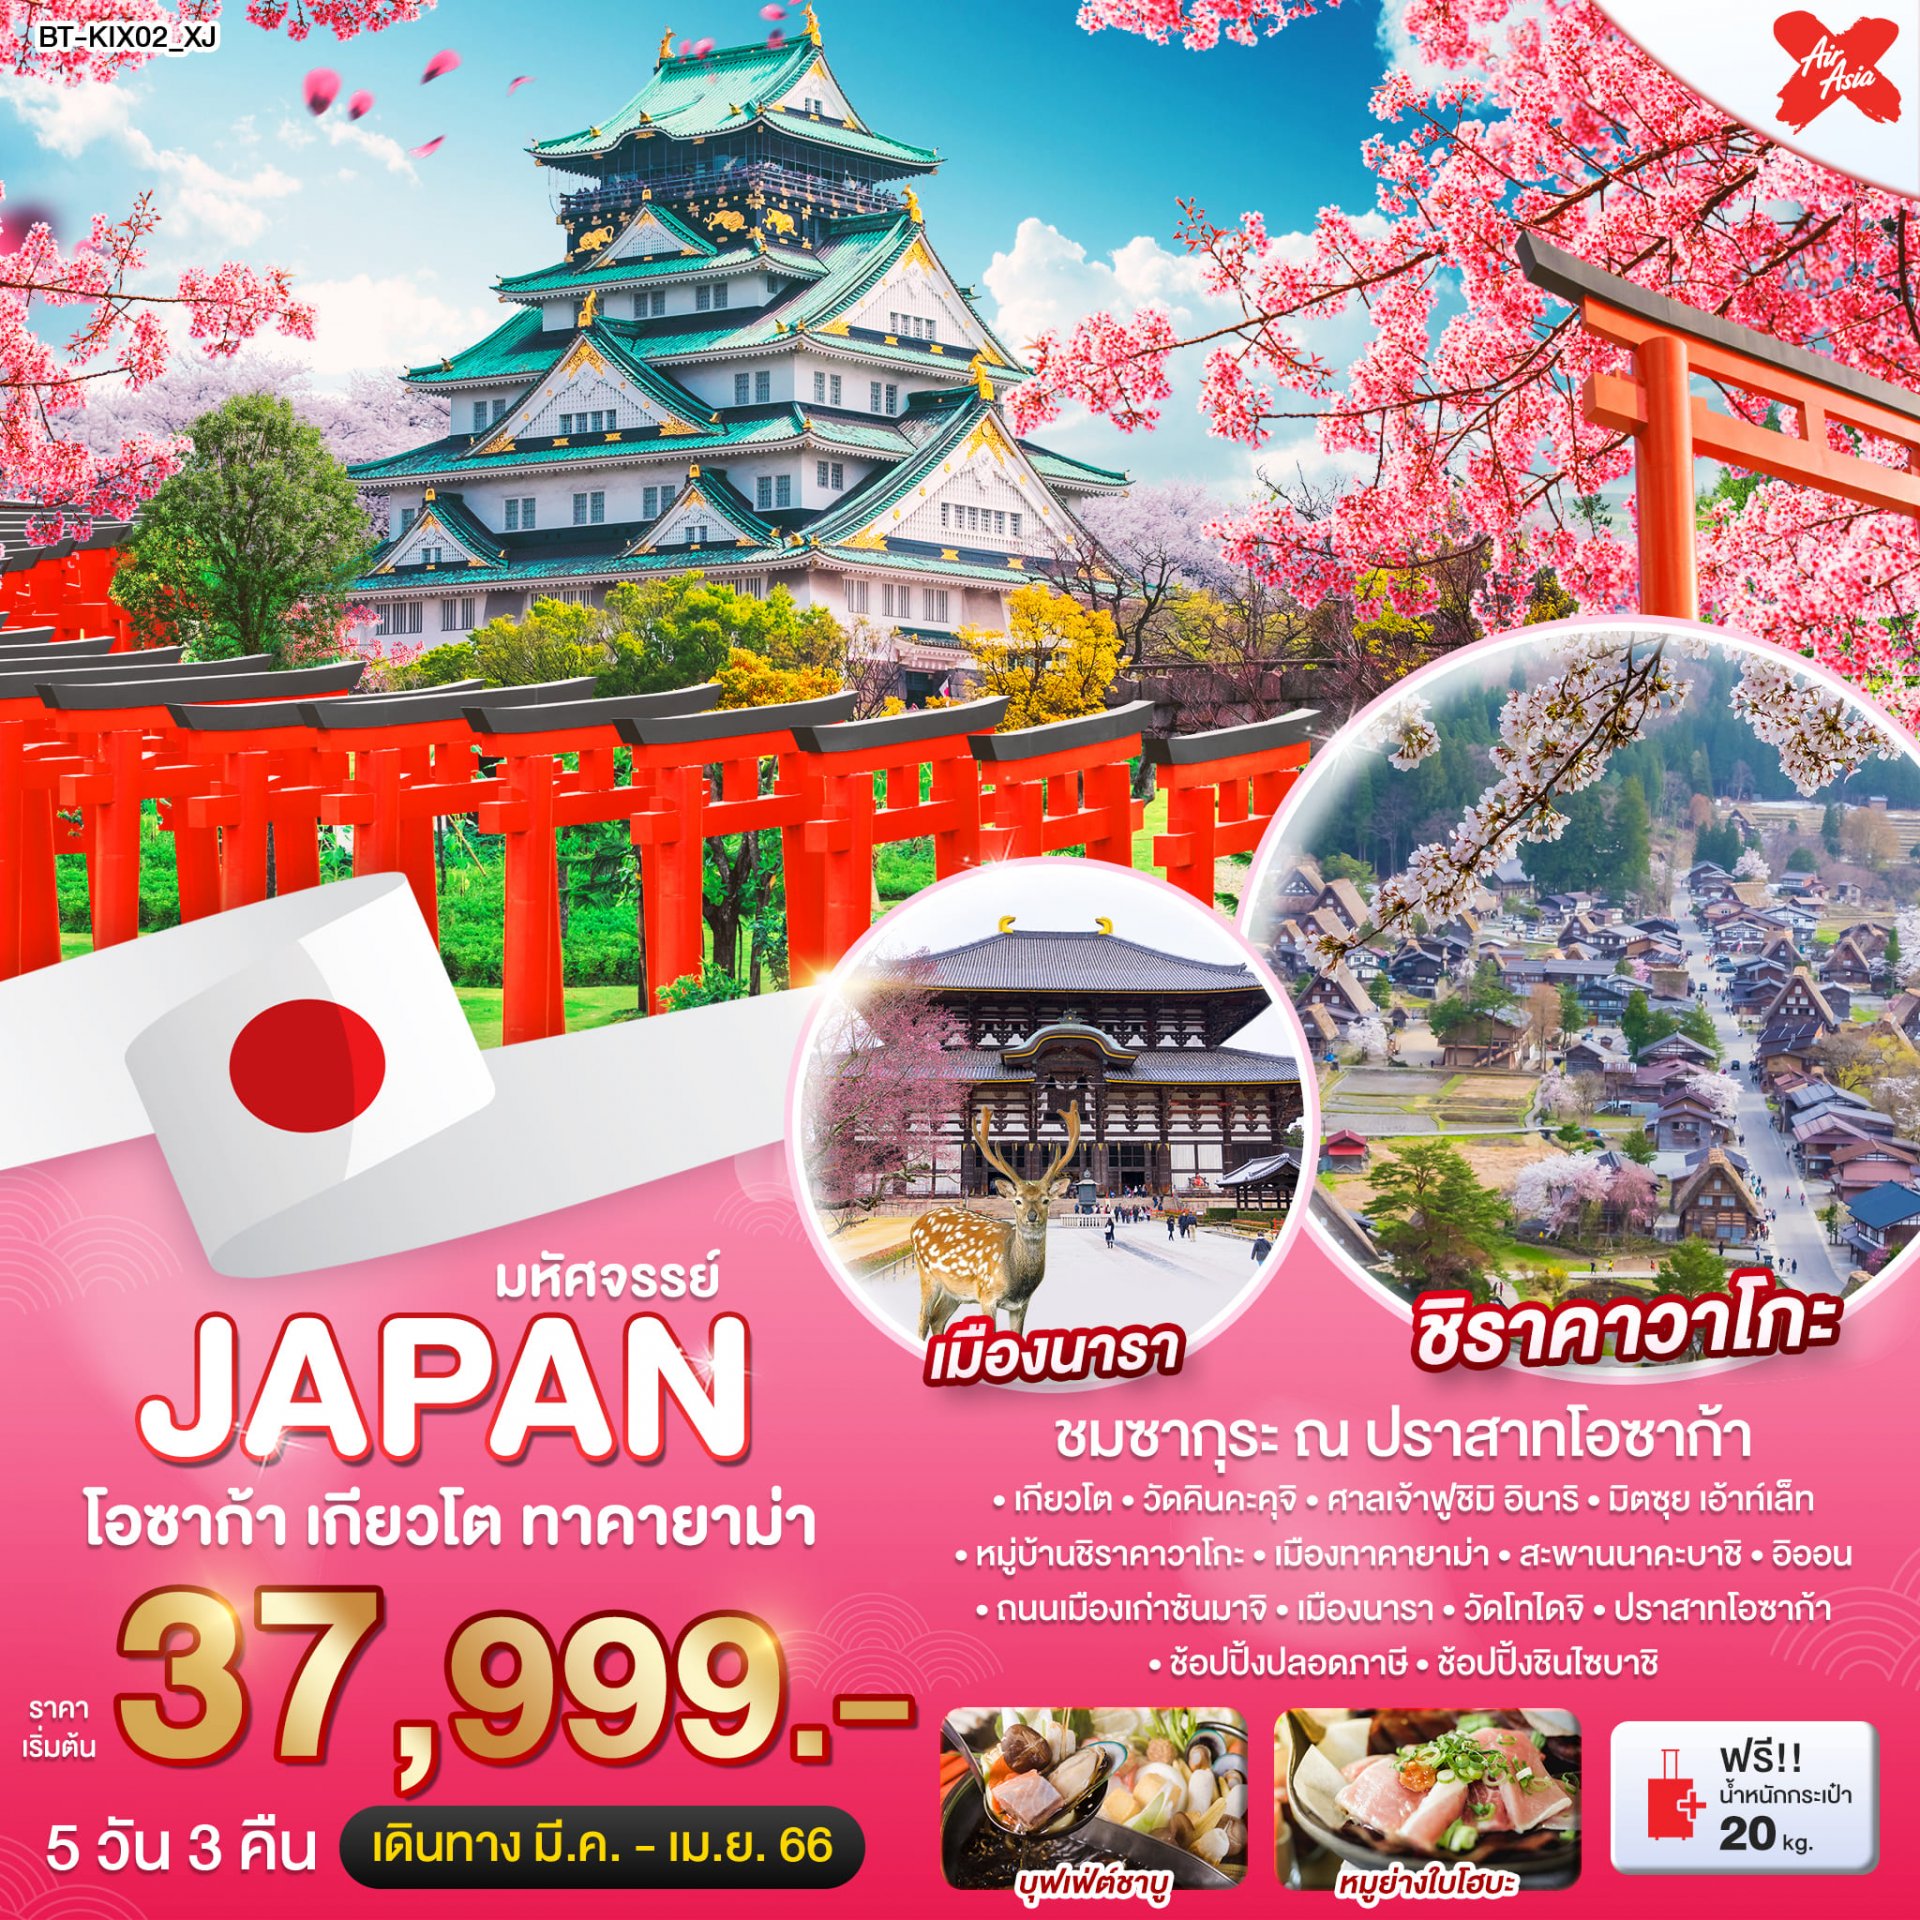 ทัวร์ญี่ปุ่น : มหัศจรรย์ Japan โอซาก้า เกียวโต ทาคายาม่า